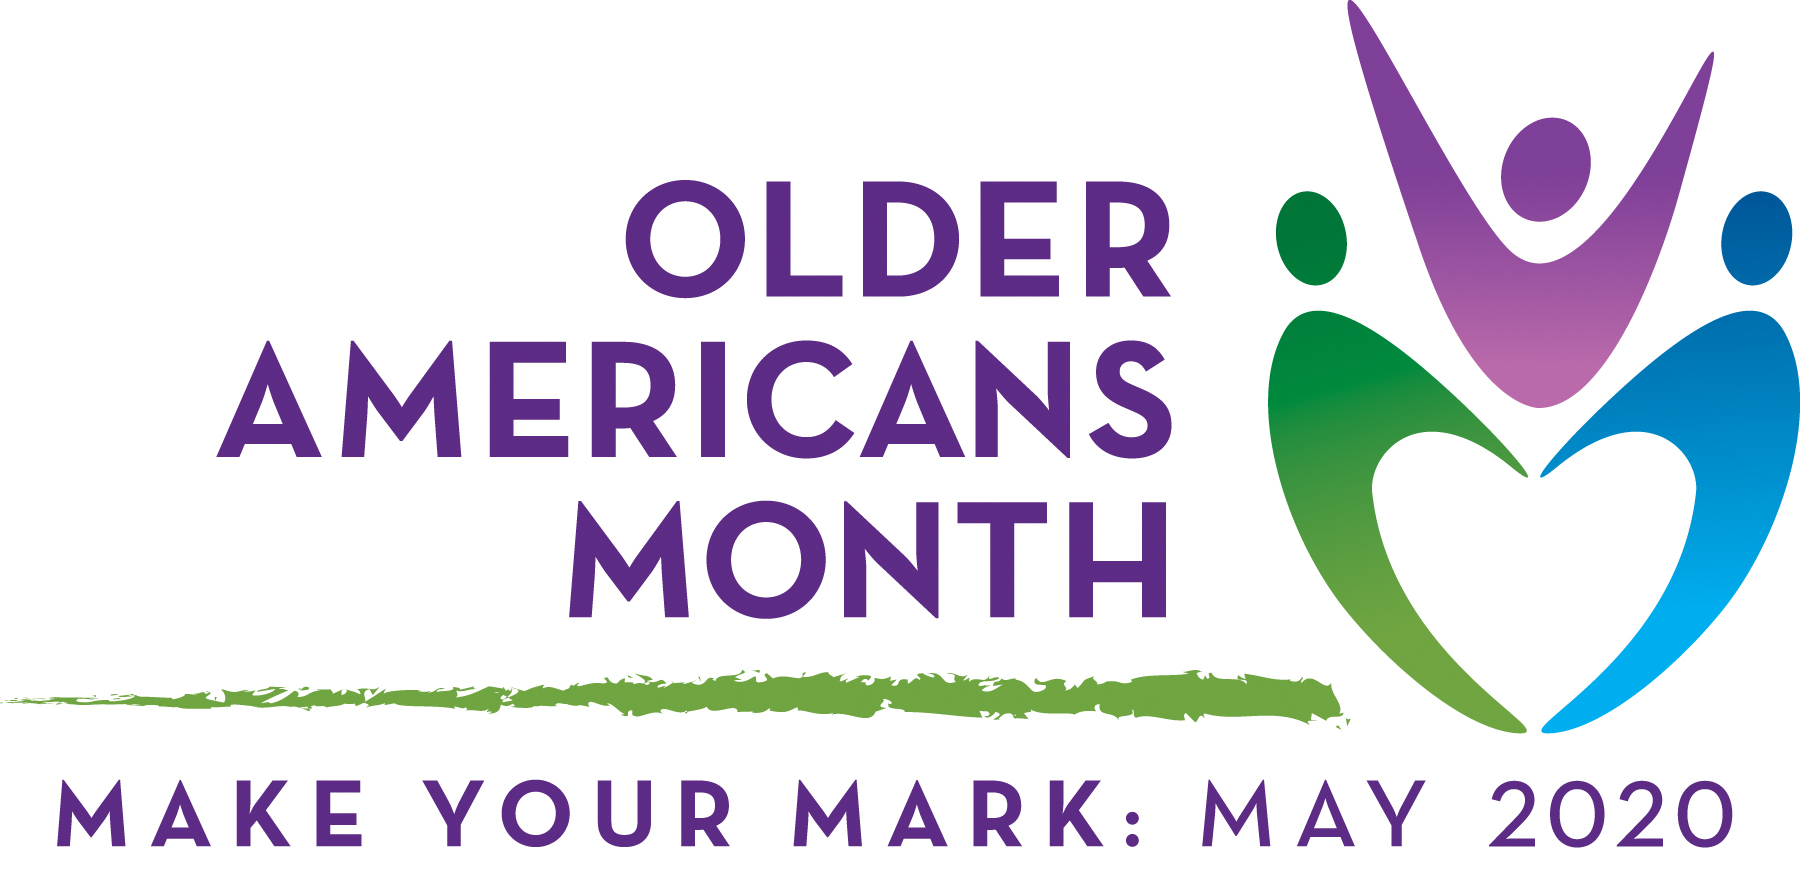 older Americans month logo